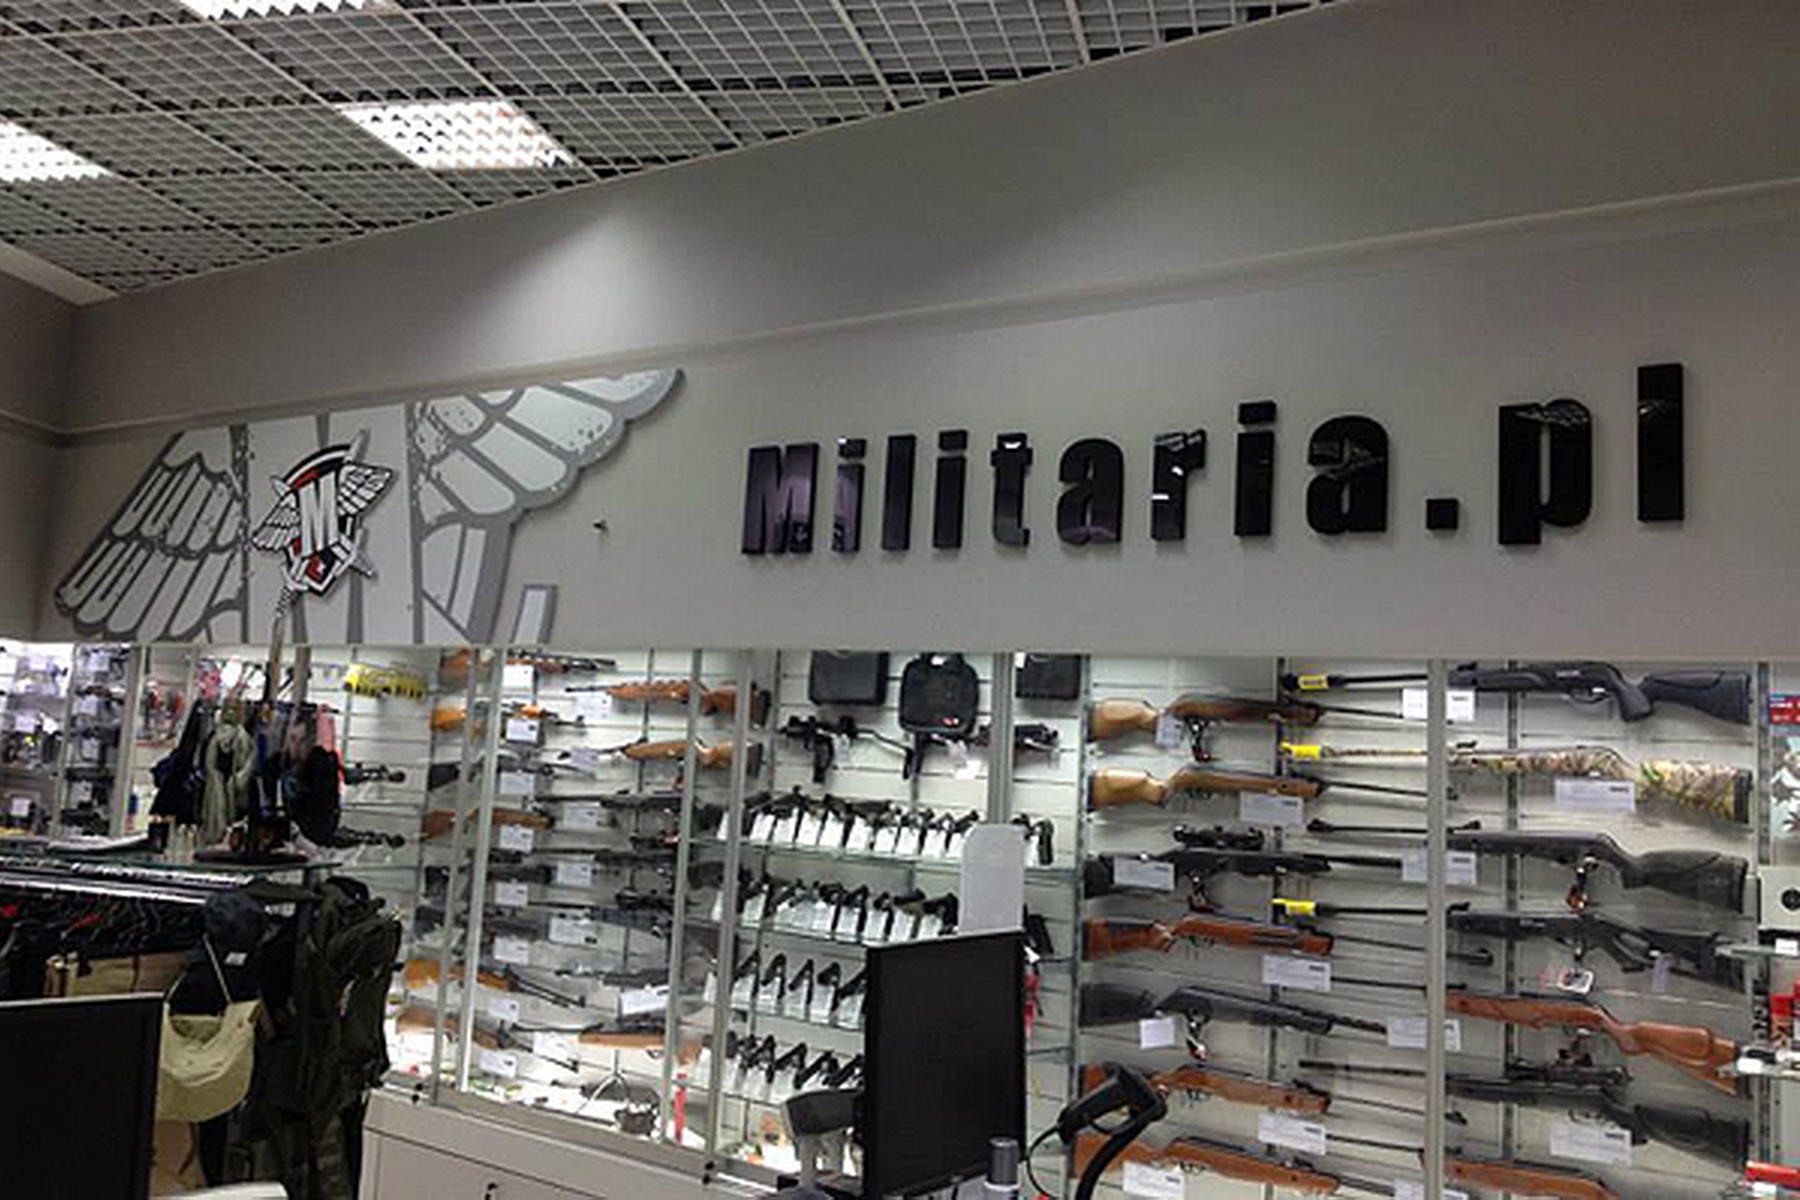 Militaria.pl